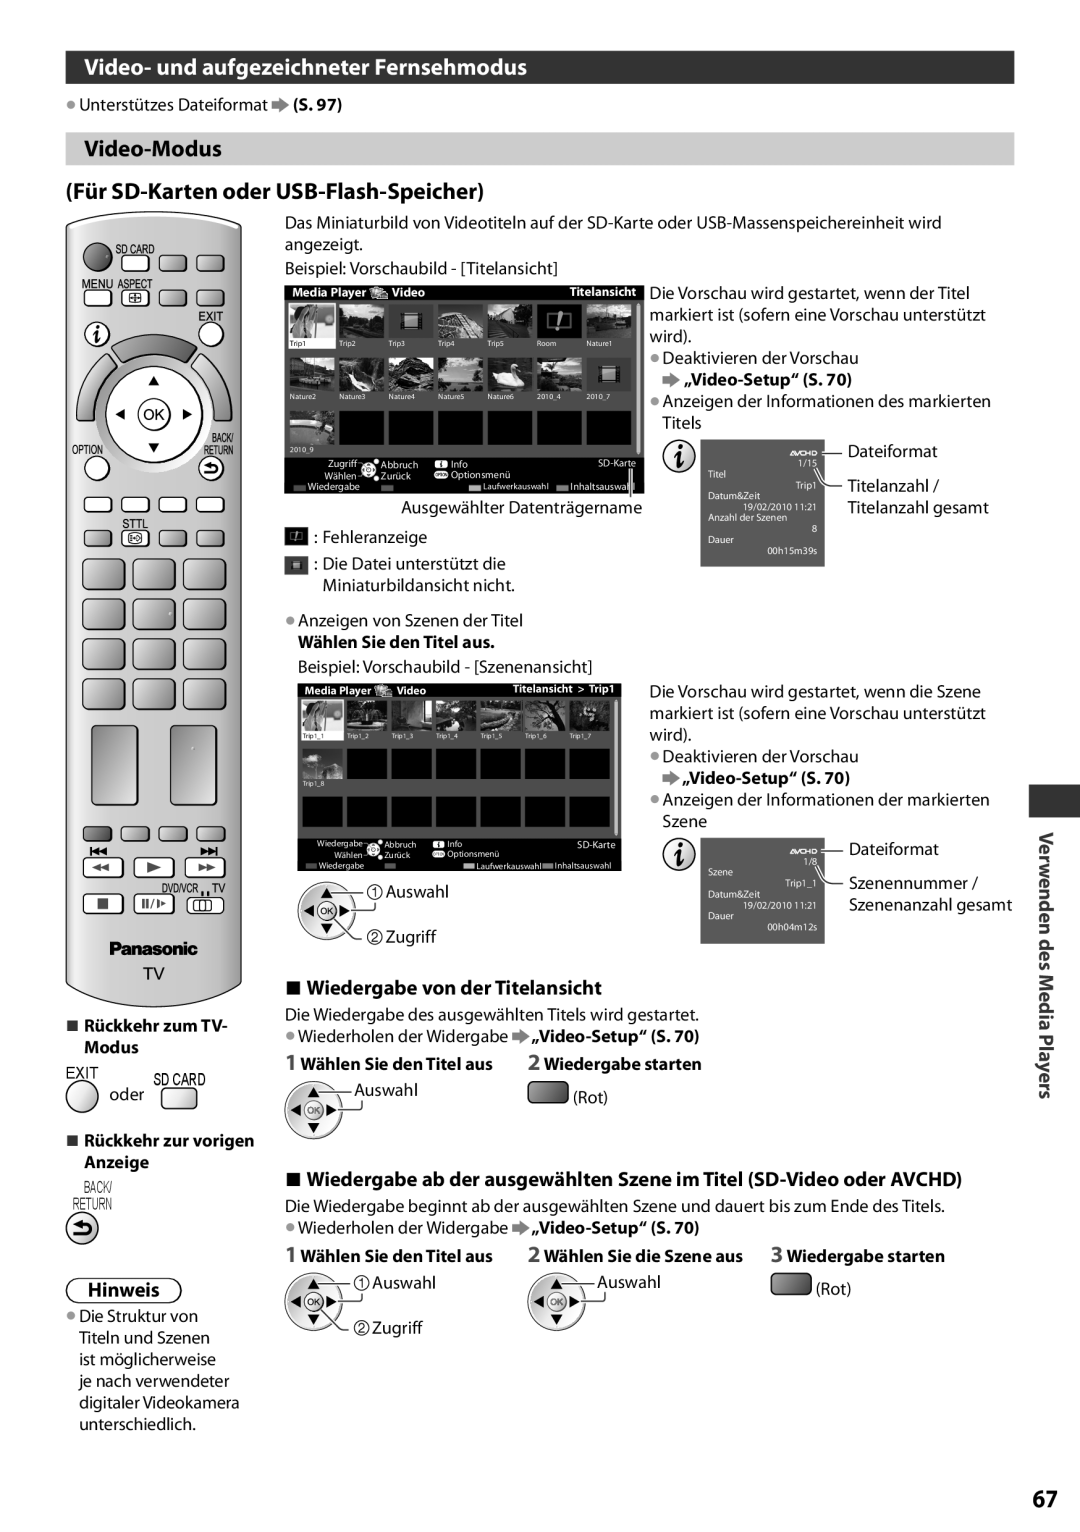 Panasonic TX-L32EF32 Video- und aufgezeichneter Fernsehmodus, Video-Modus Für SD-Karten oder USB-Flash-Speicher, Hinweis 